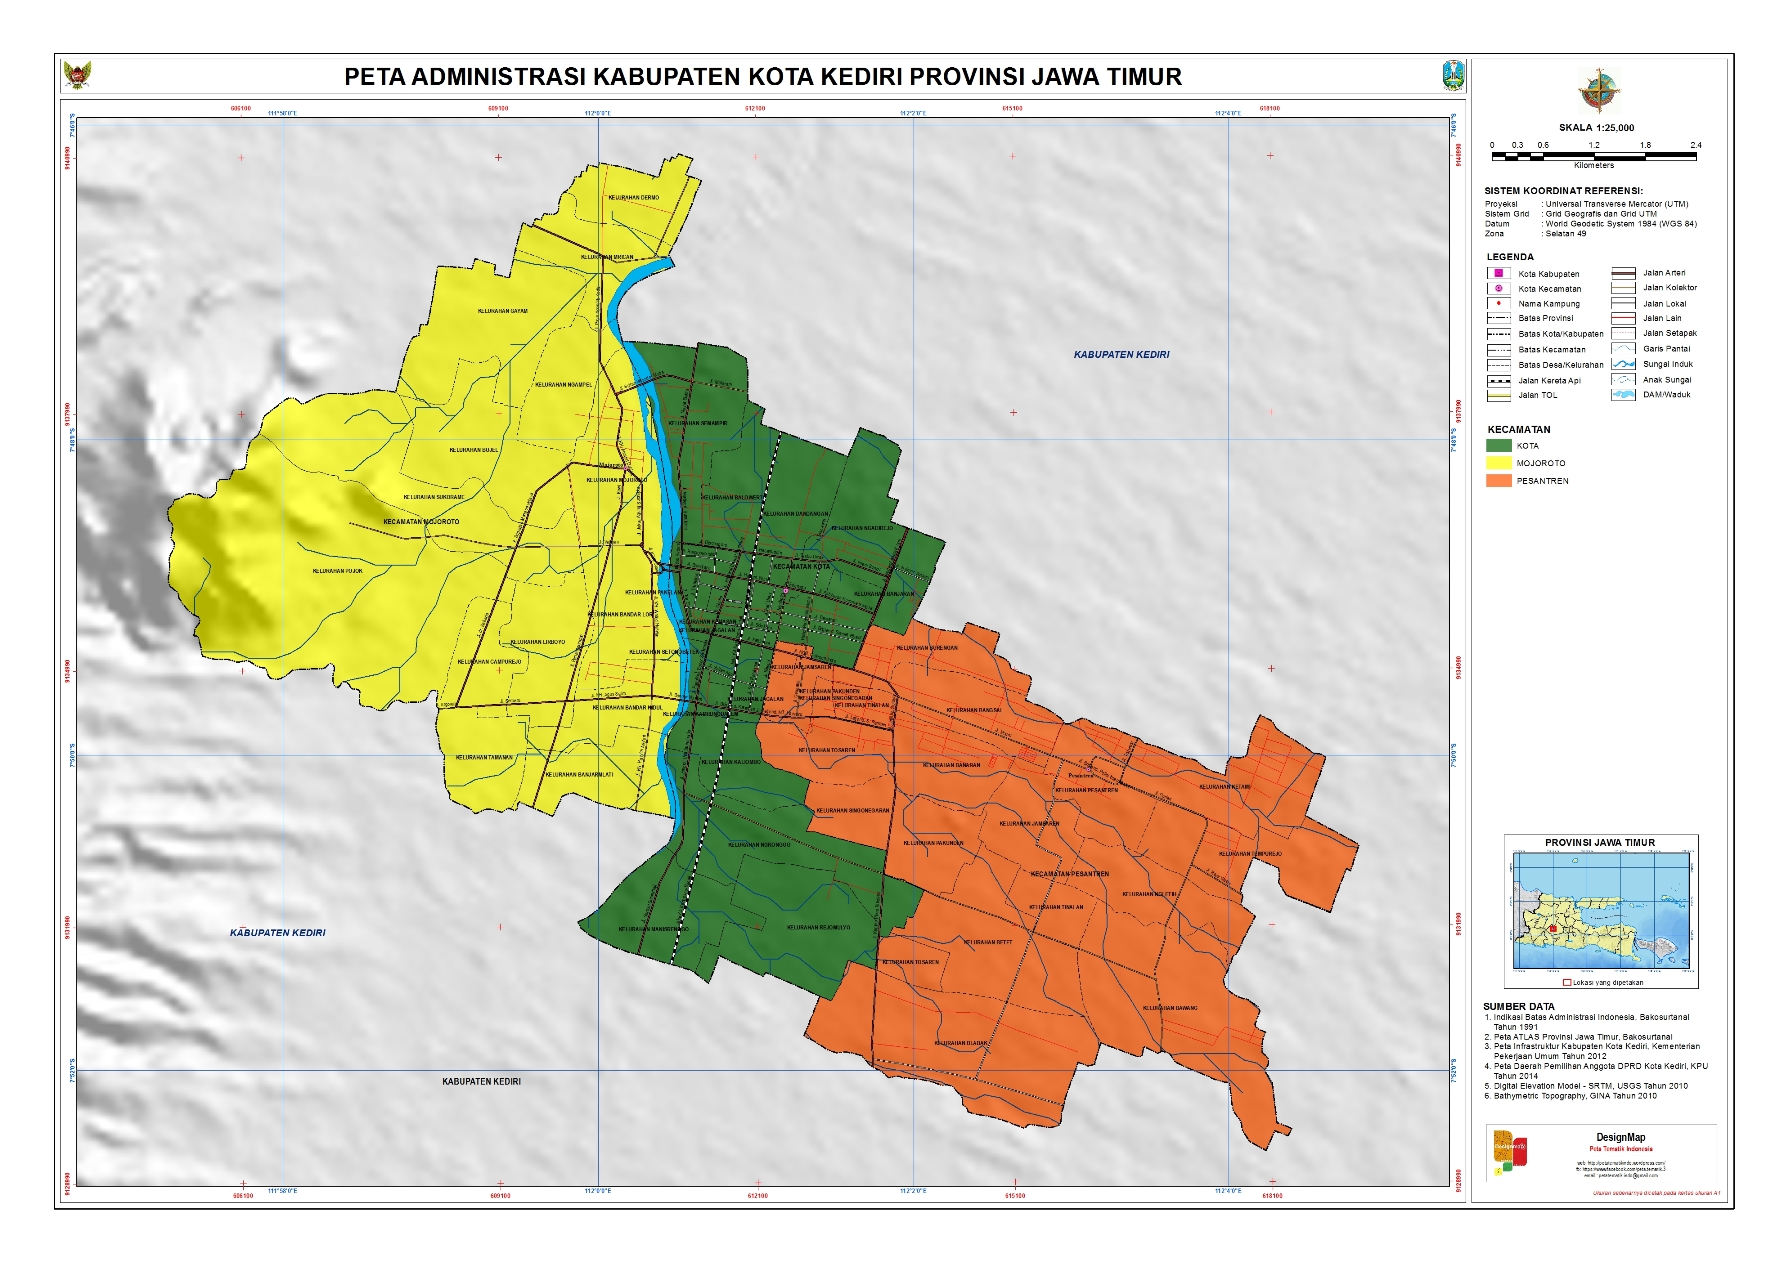 Administrasi Kota Kediri Peta Tematik Indonesia